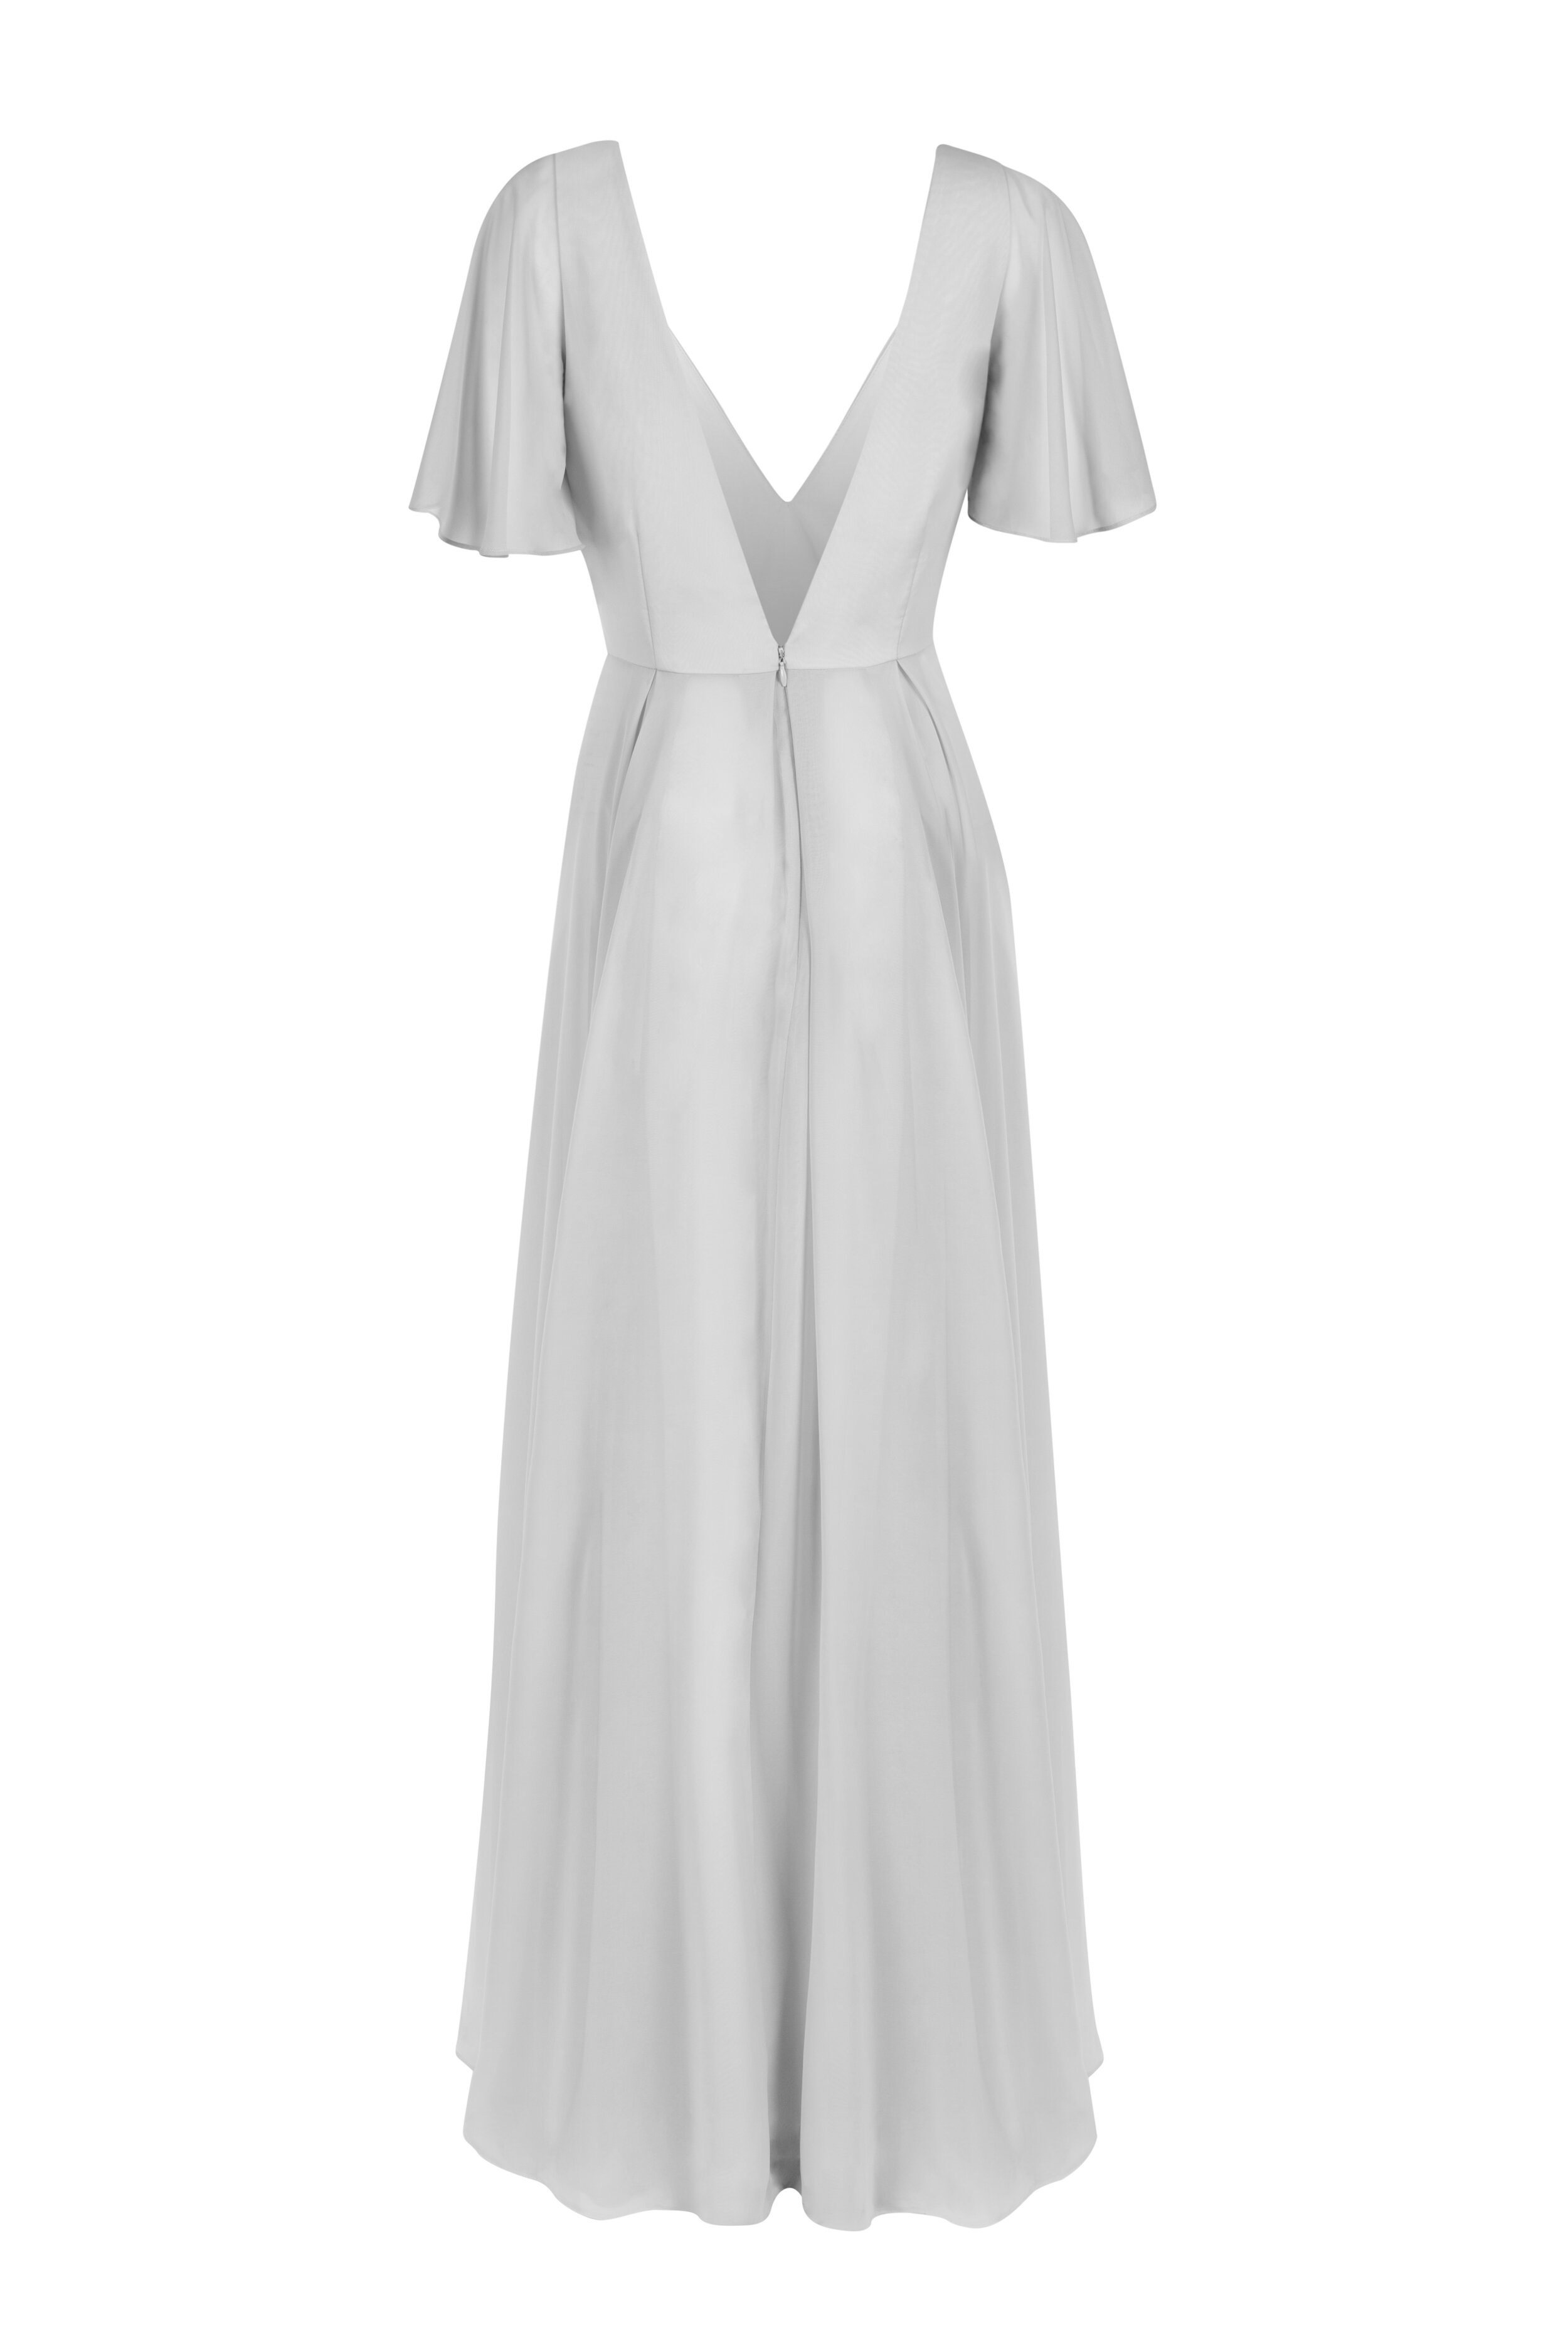 TH&TH Edie Bridesmaid Dress in Silver Mist — TH&TH